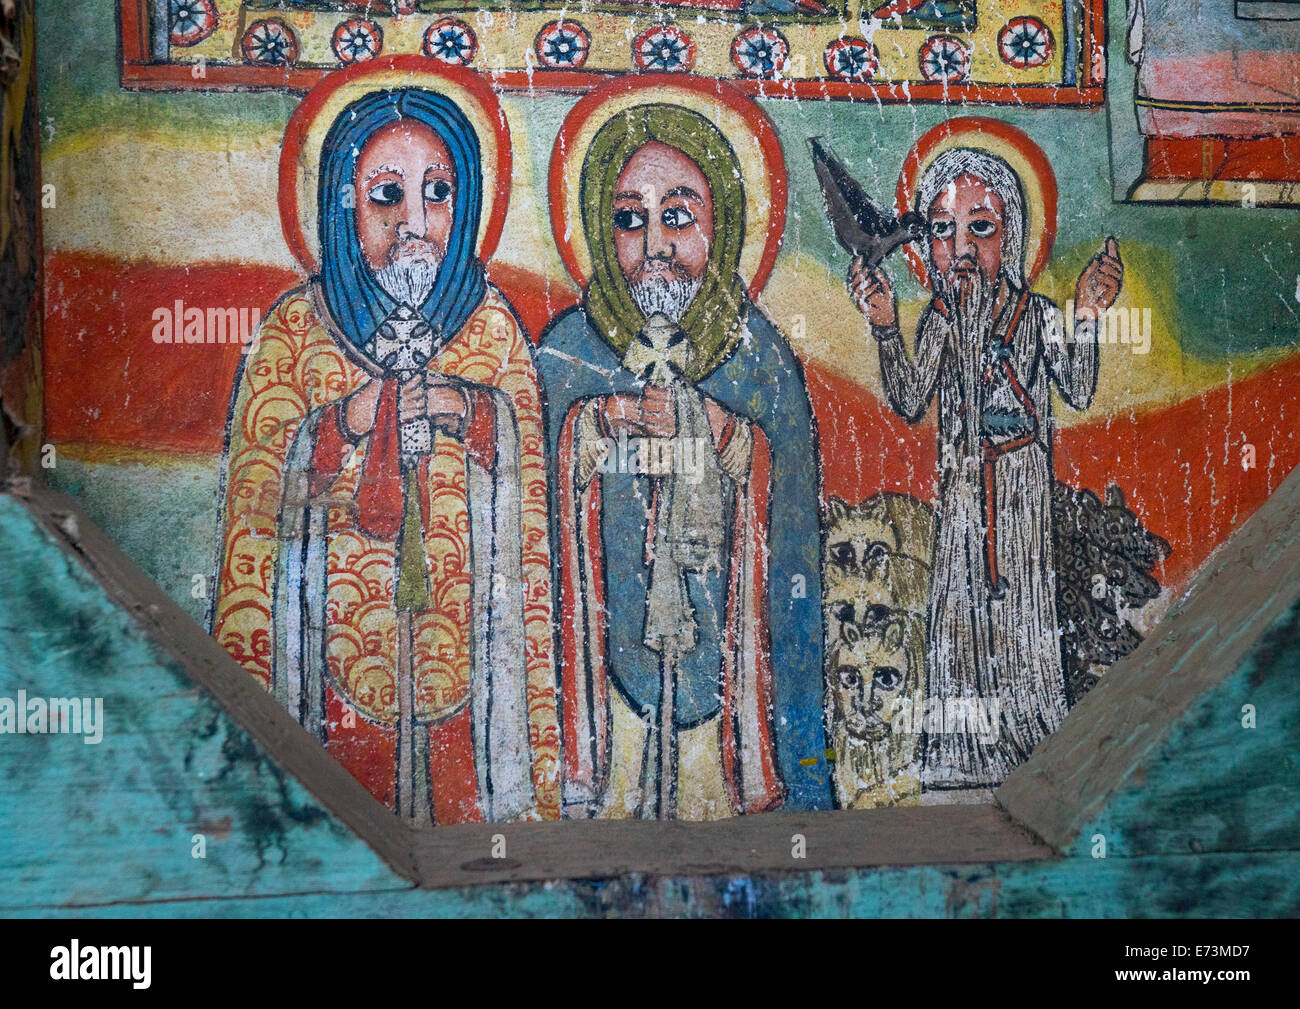 Ora Kidane Merhet peinture murale de l'Église, Bahir Dar, Ethiopie Banque D'Images